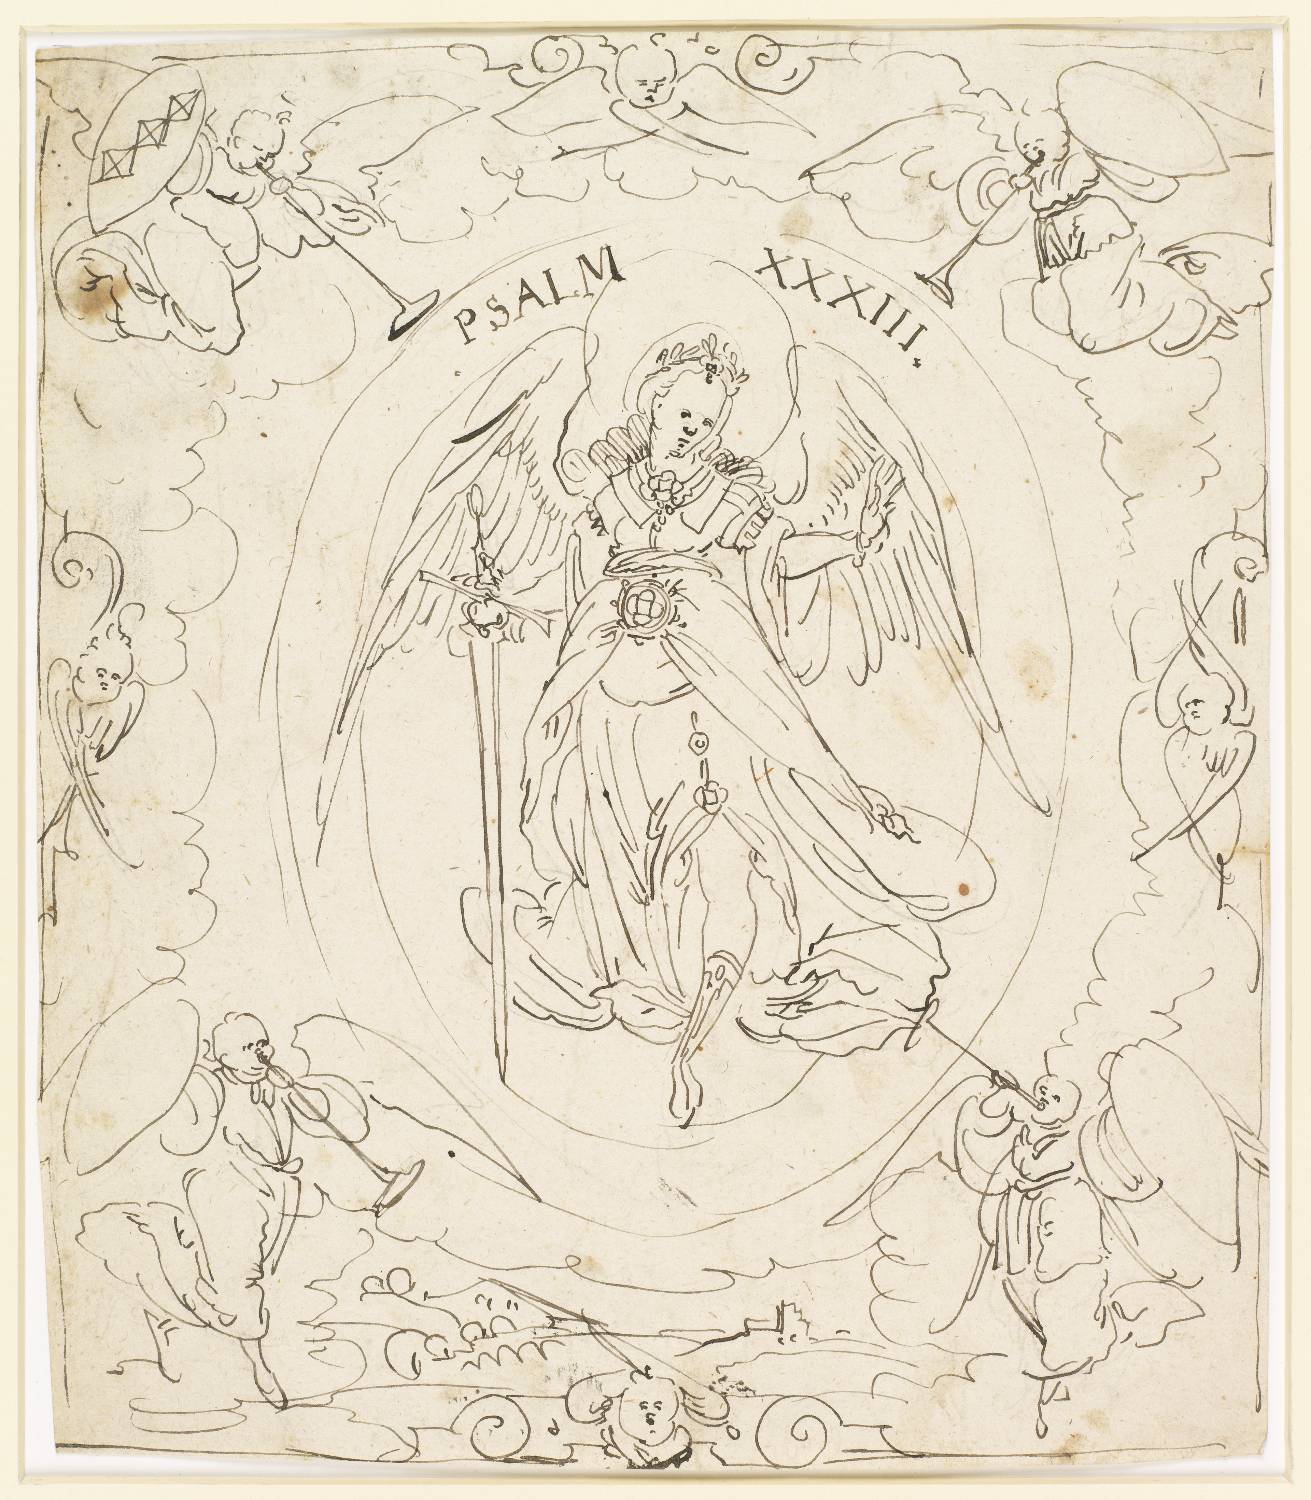 Scheibenriss mit Engel mit Schwert "Psalm XXIII" und vier Posaune blasende Engel, einer mit Wappen Peyer